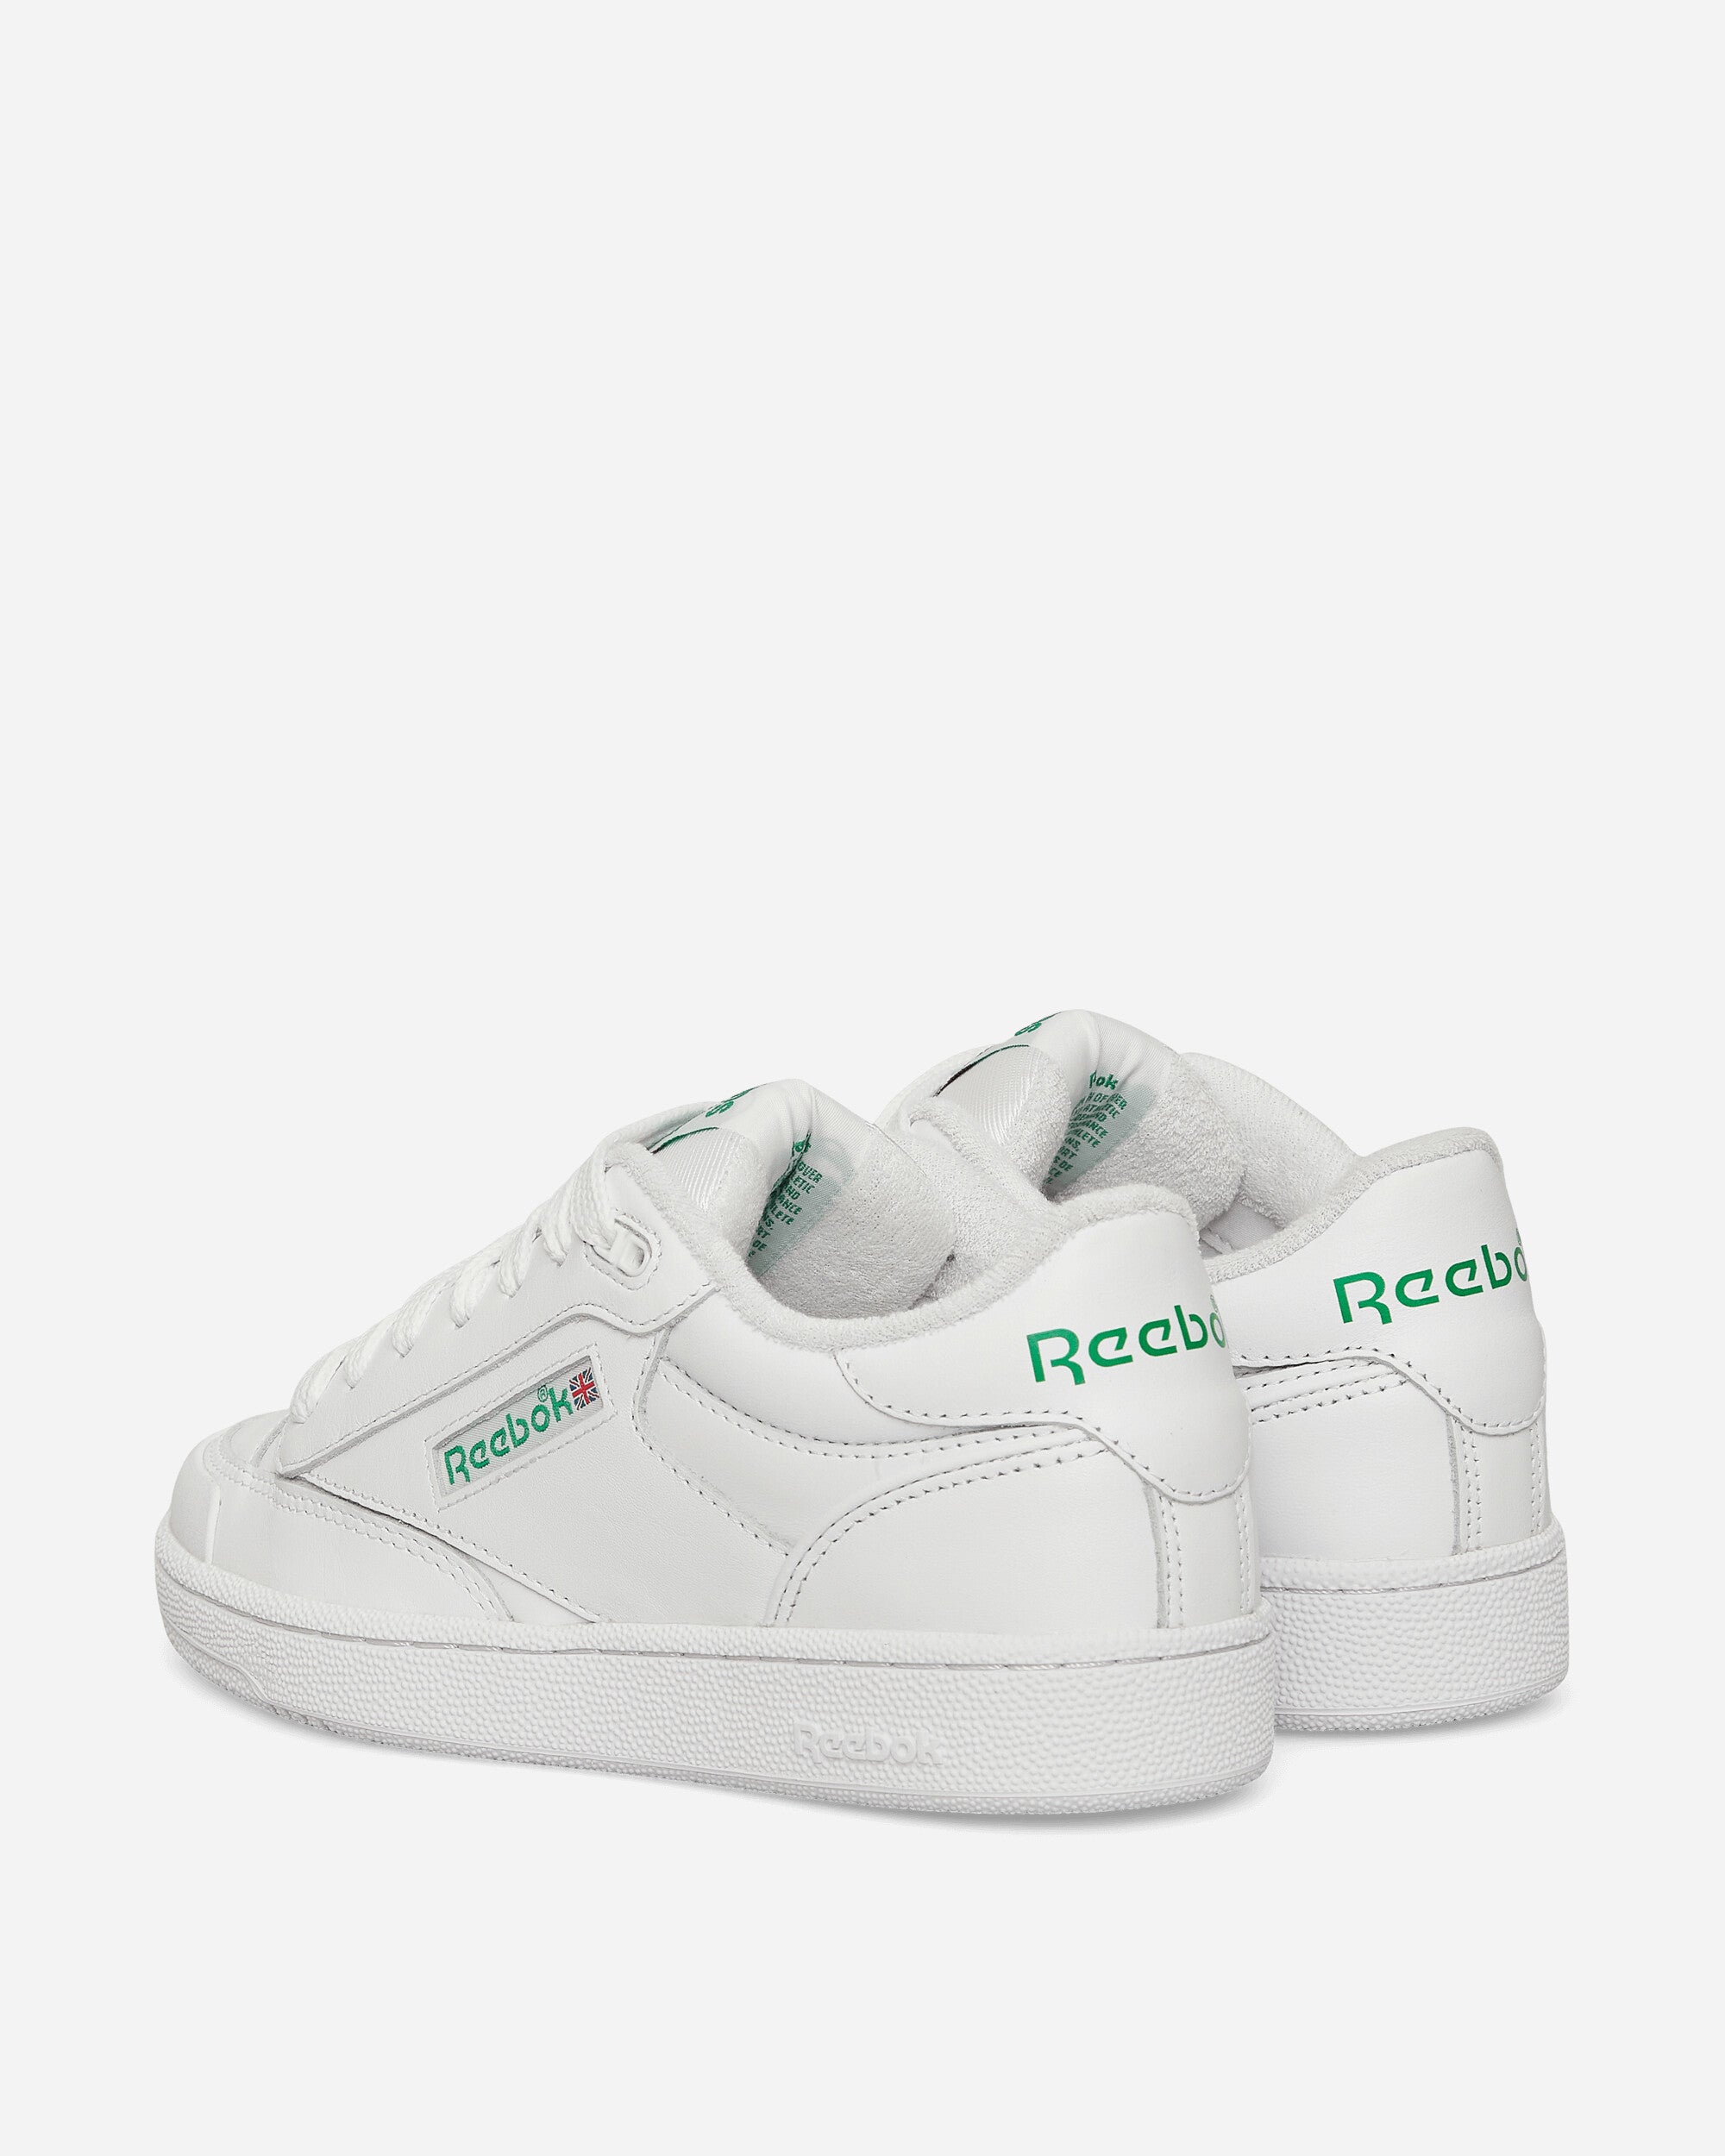 Reebok Club C Bulk White/Glen Green/White Sneakers Low IF0770